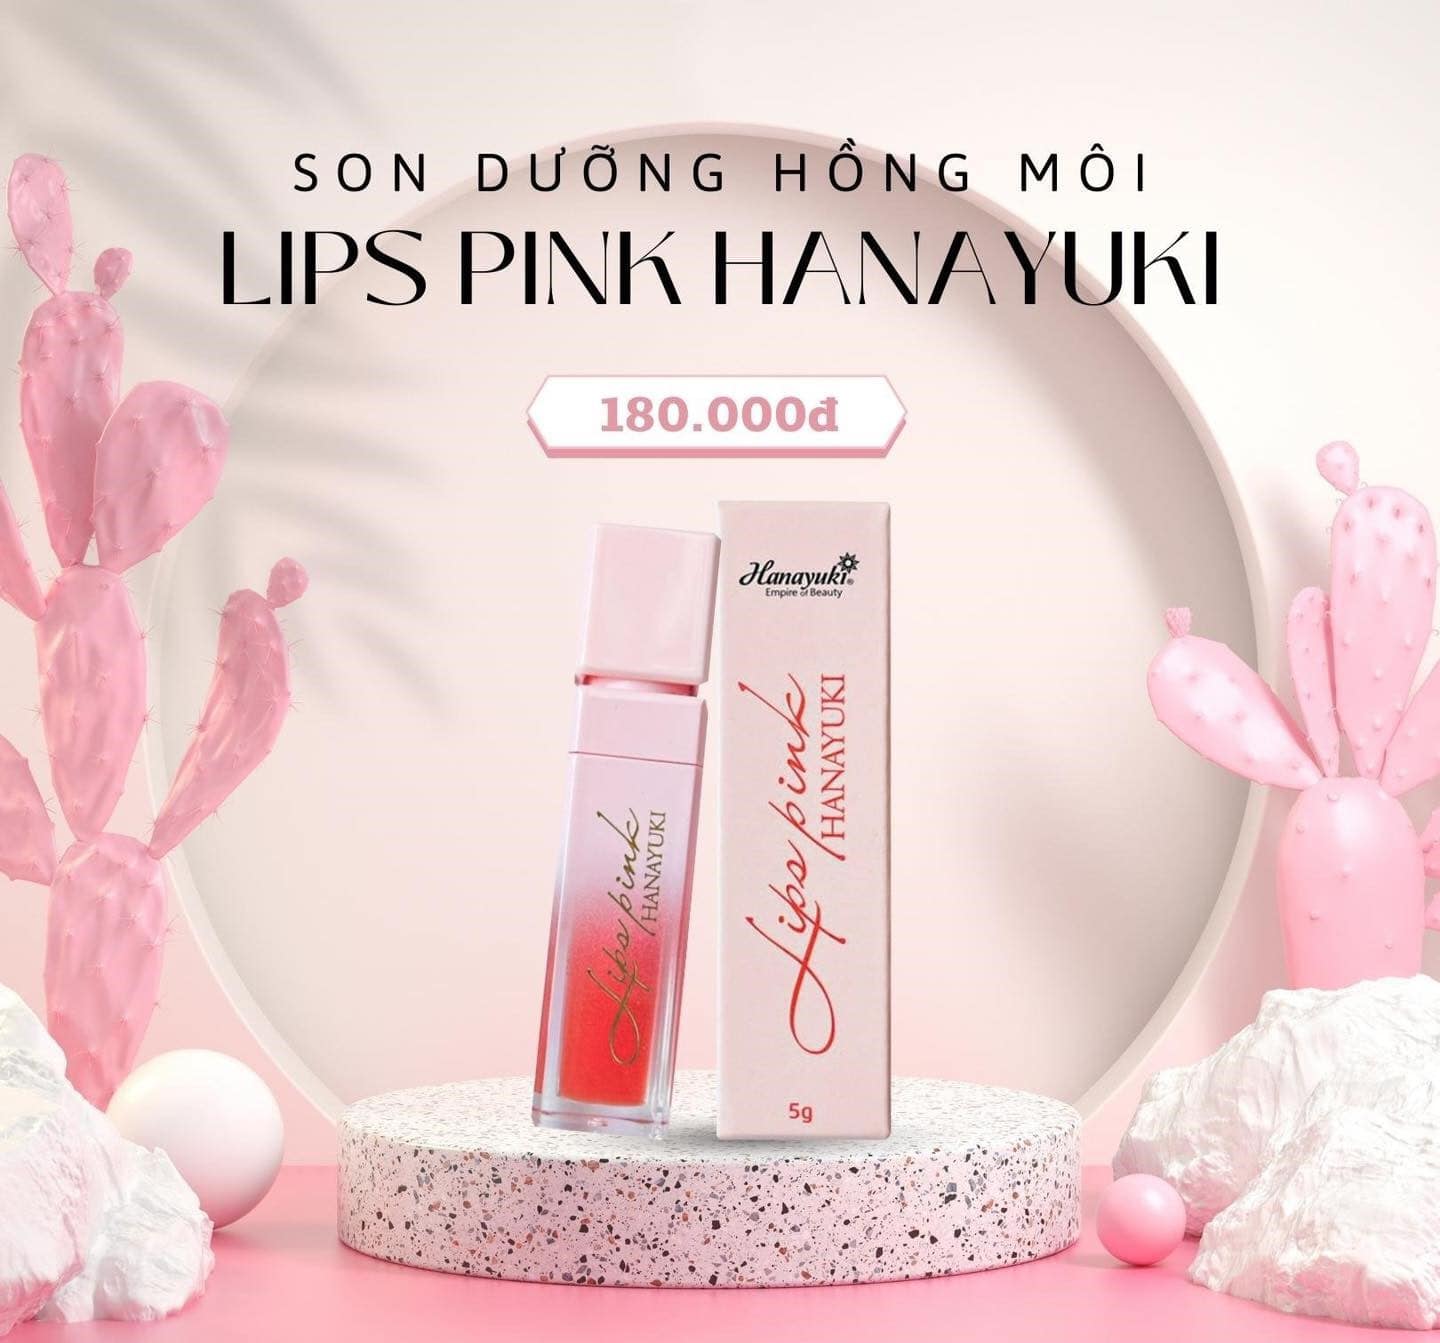 Son Dưỡng Hồng Môi Hanayuki Lips PinkCÔNG DỤNG: Bổ sung độ ẩm & dưỡng chất cho môi. Giúp làm mềm môi, giúp giảm thâm môi và làm hồng môi